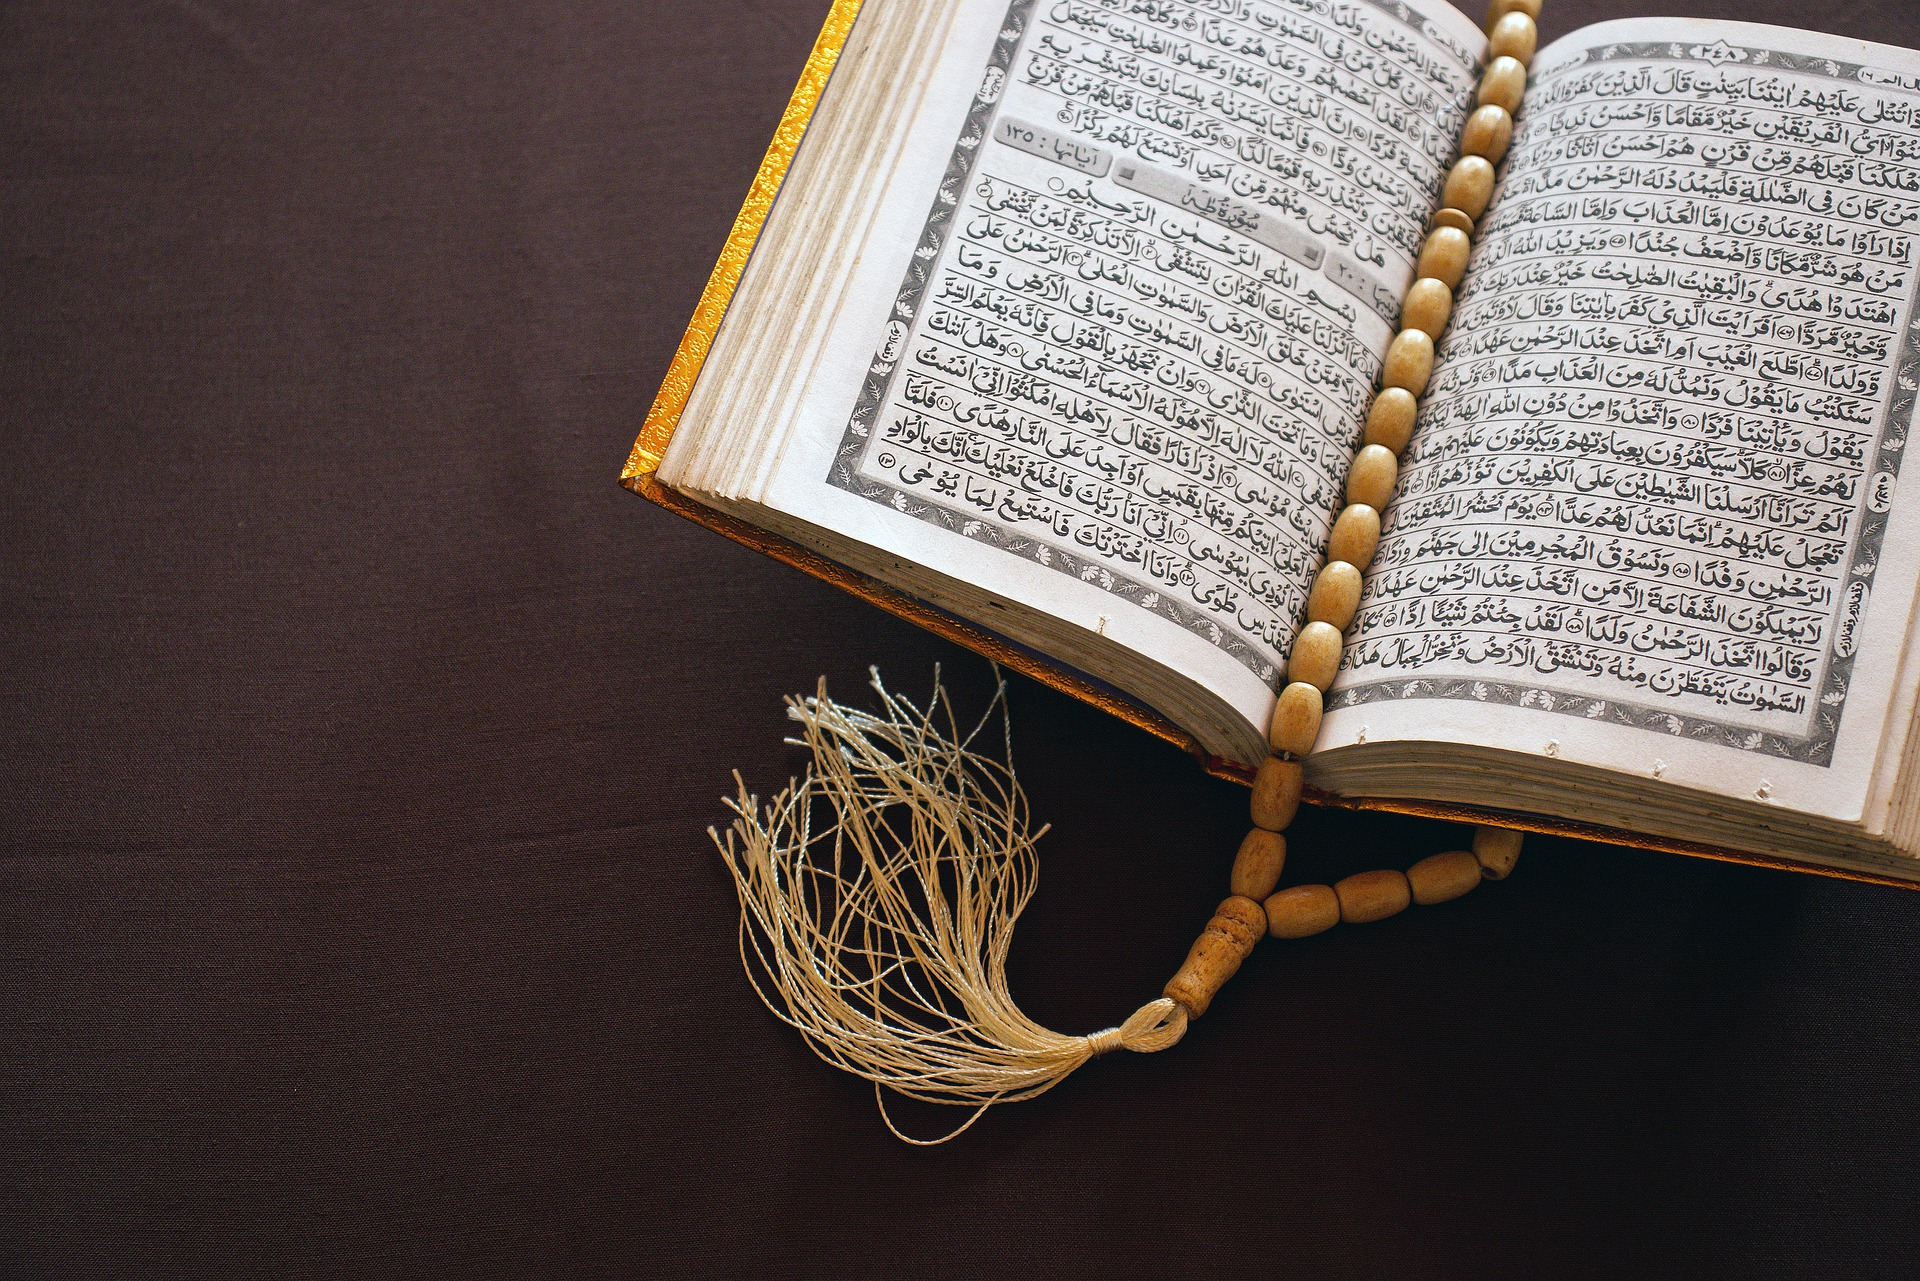 تحميل تطبيق آيات ayat افضل برنامج اسلامي للقرآن الكريم و التلاوات للاندرويد